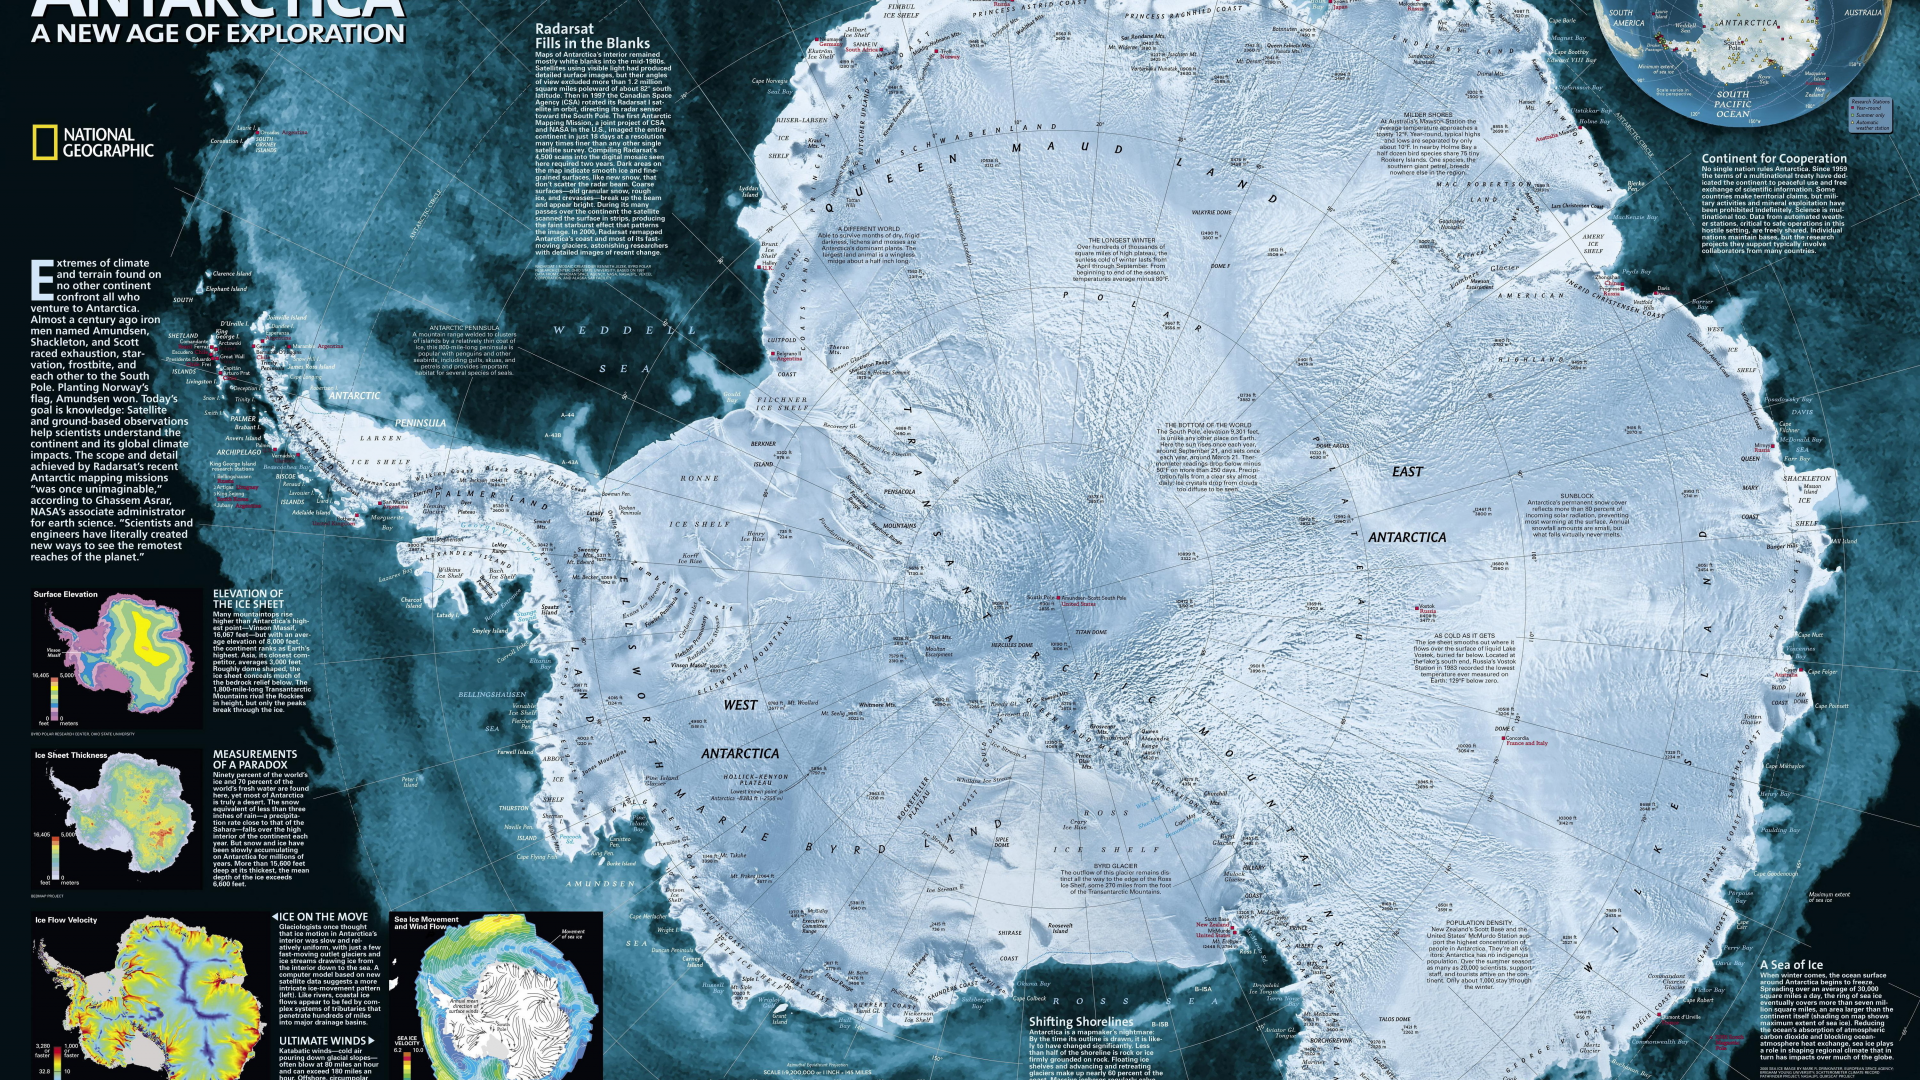 карта антарктики, географическая карта, стиль, карта, антарктика